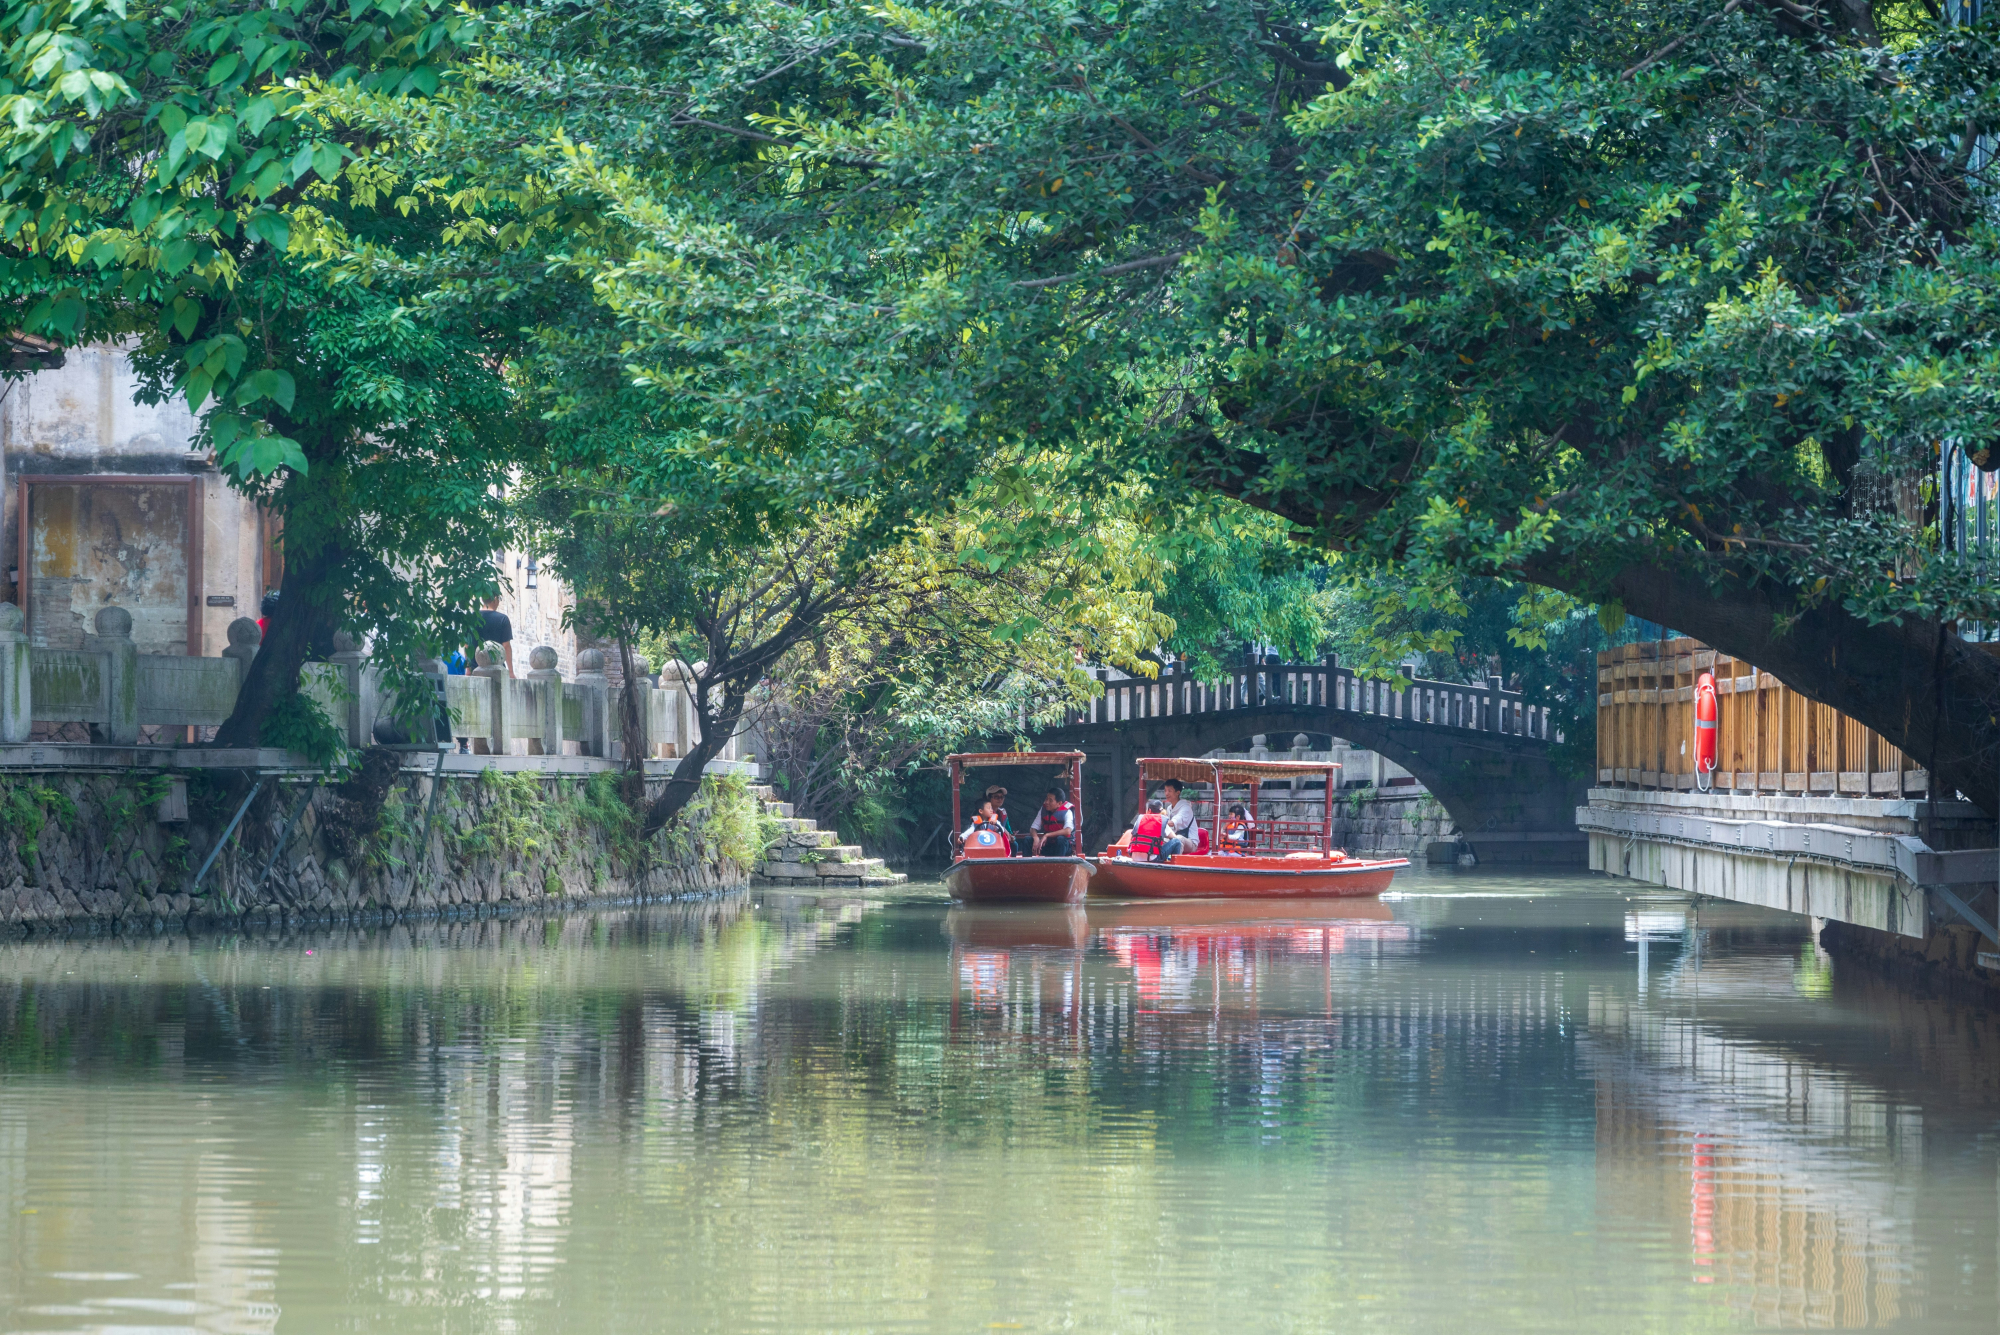 découvrez les meilleures attractions de fuzhou et préparez-vous à vivre une expérience inoubliable dans cette ville chinoise dynamique. des temples anciens aux parcs pittoresques, fuzhou a tout pour plaire aux voyageurs en quête de découvertes et d'aventures.